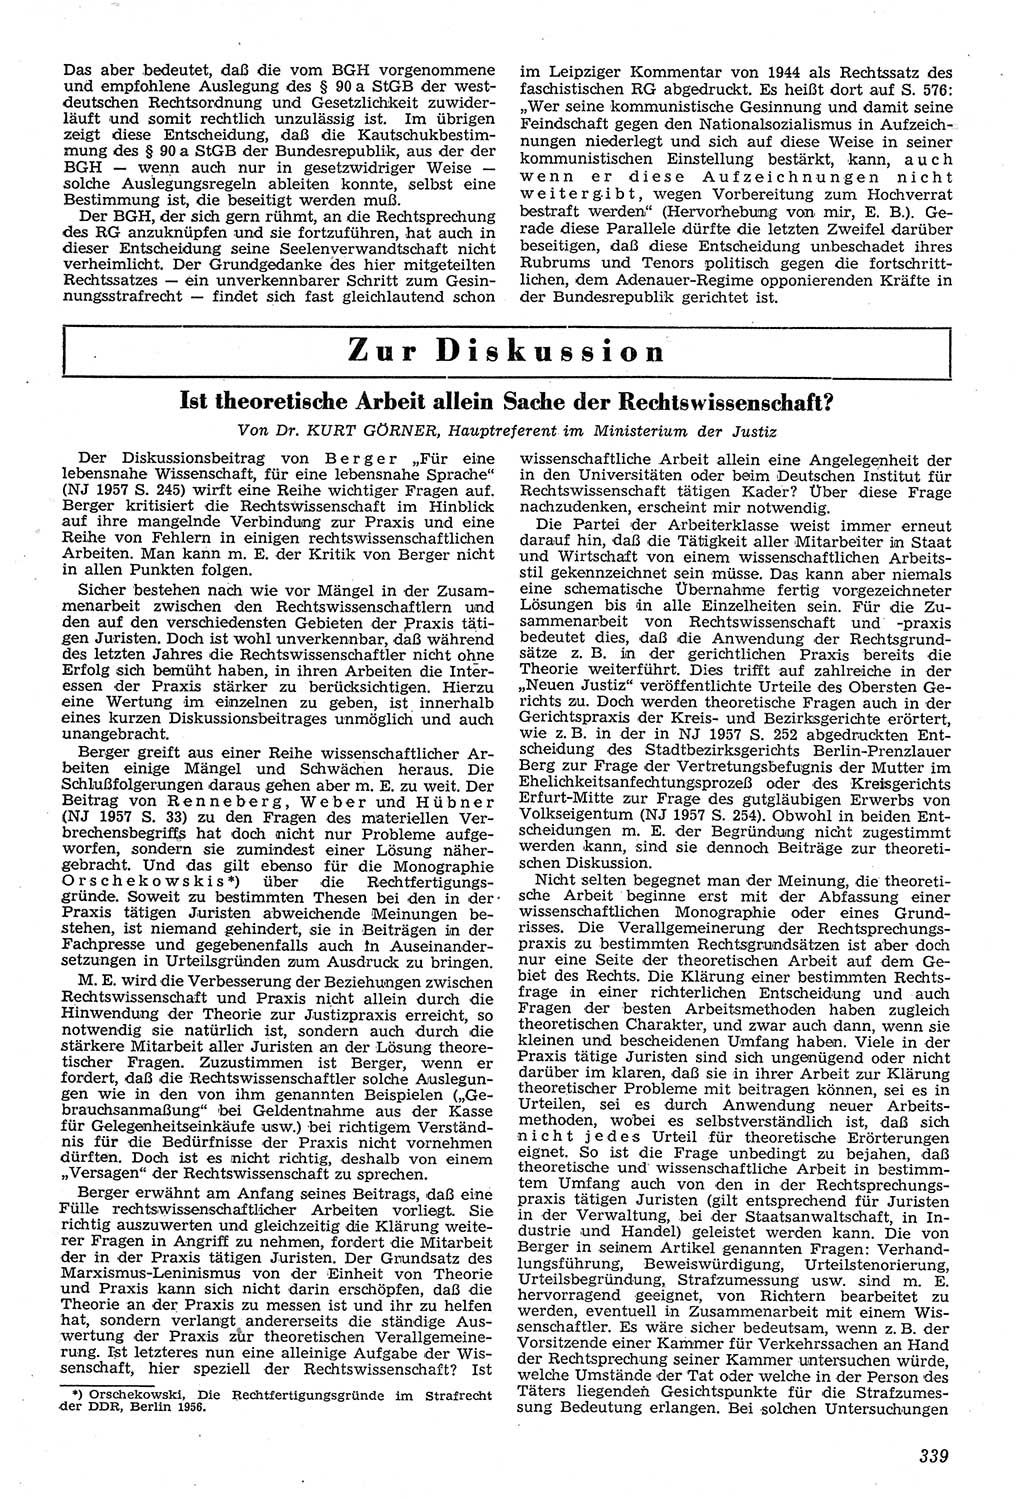 Neue Justiz (NJ), Zeitschrift für Recht und Rechtswissenschaft [Deutsche Demokratische Republik (DDR)], 11. Jahrgang 1957, Seite 339 (NJ DDR 1957, S. 339)